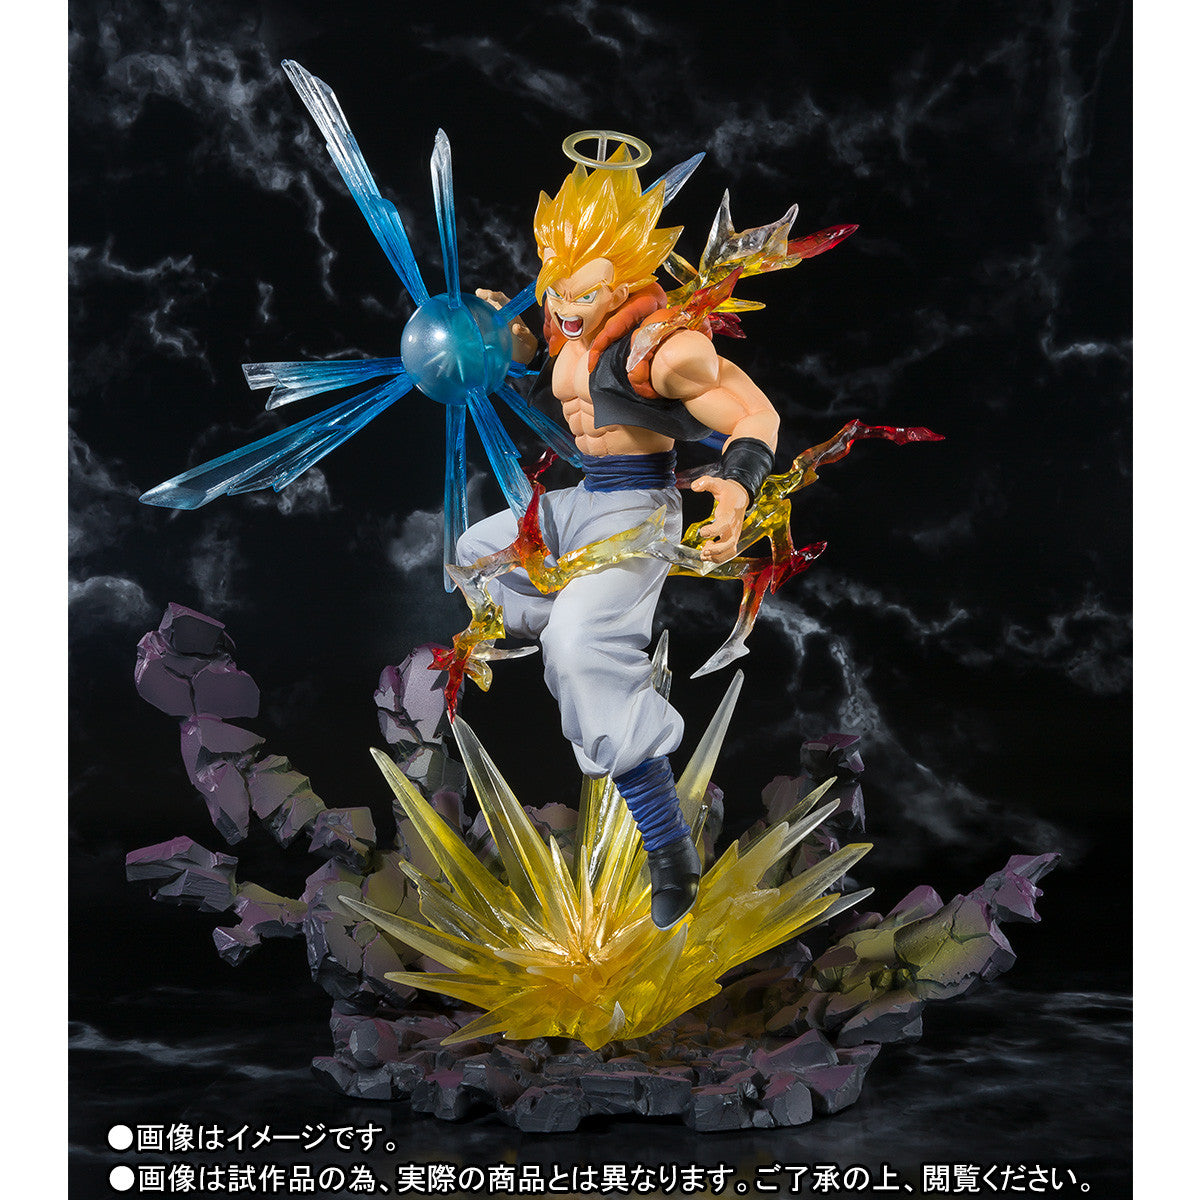 Figuarts Zero - Dragon Ball Z - Super Saiyan Gogeta (TamashiiWeb Exclusive) - Marvelous Toys